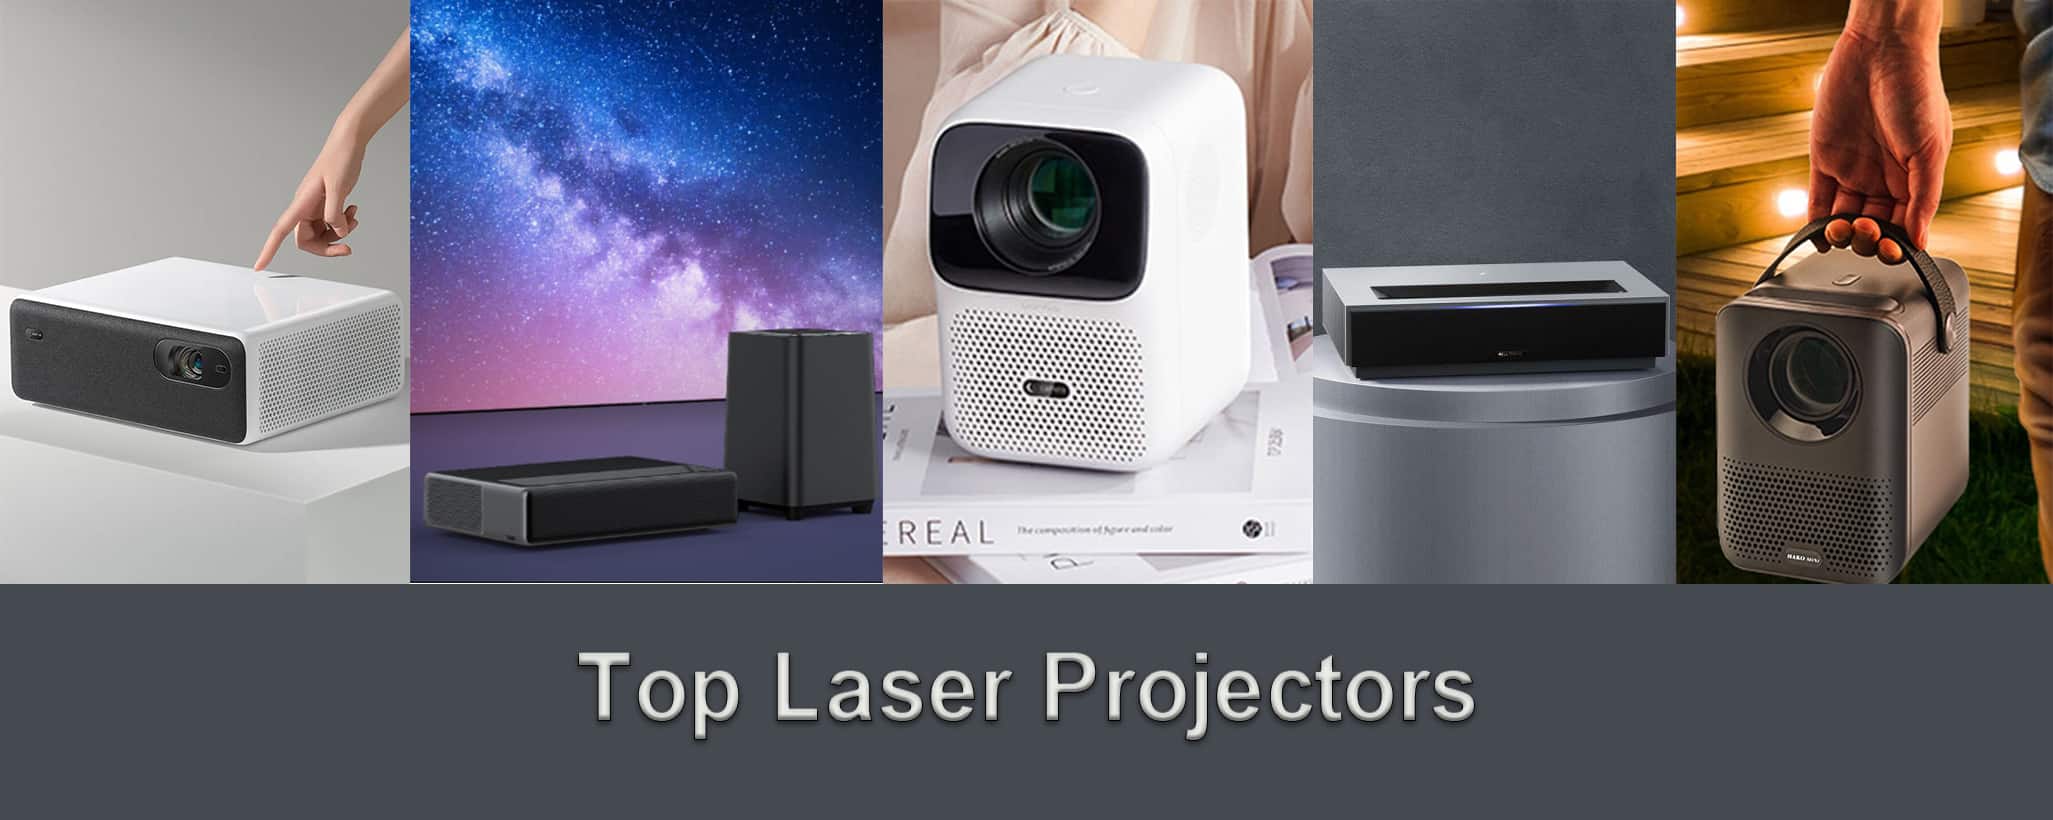 Top laser projectors